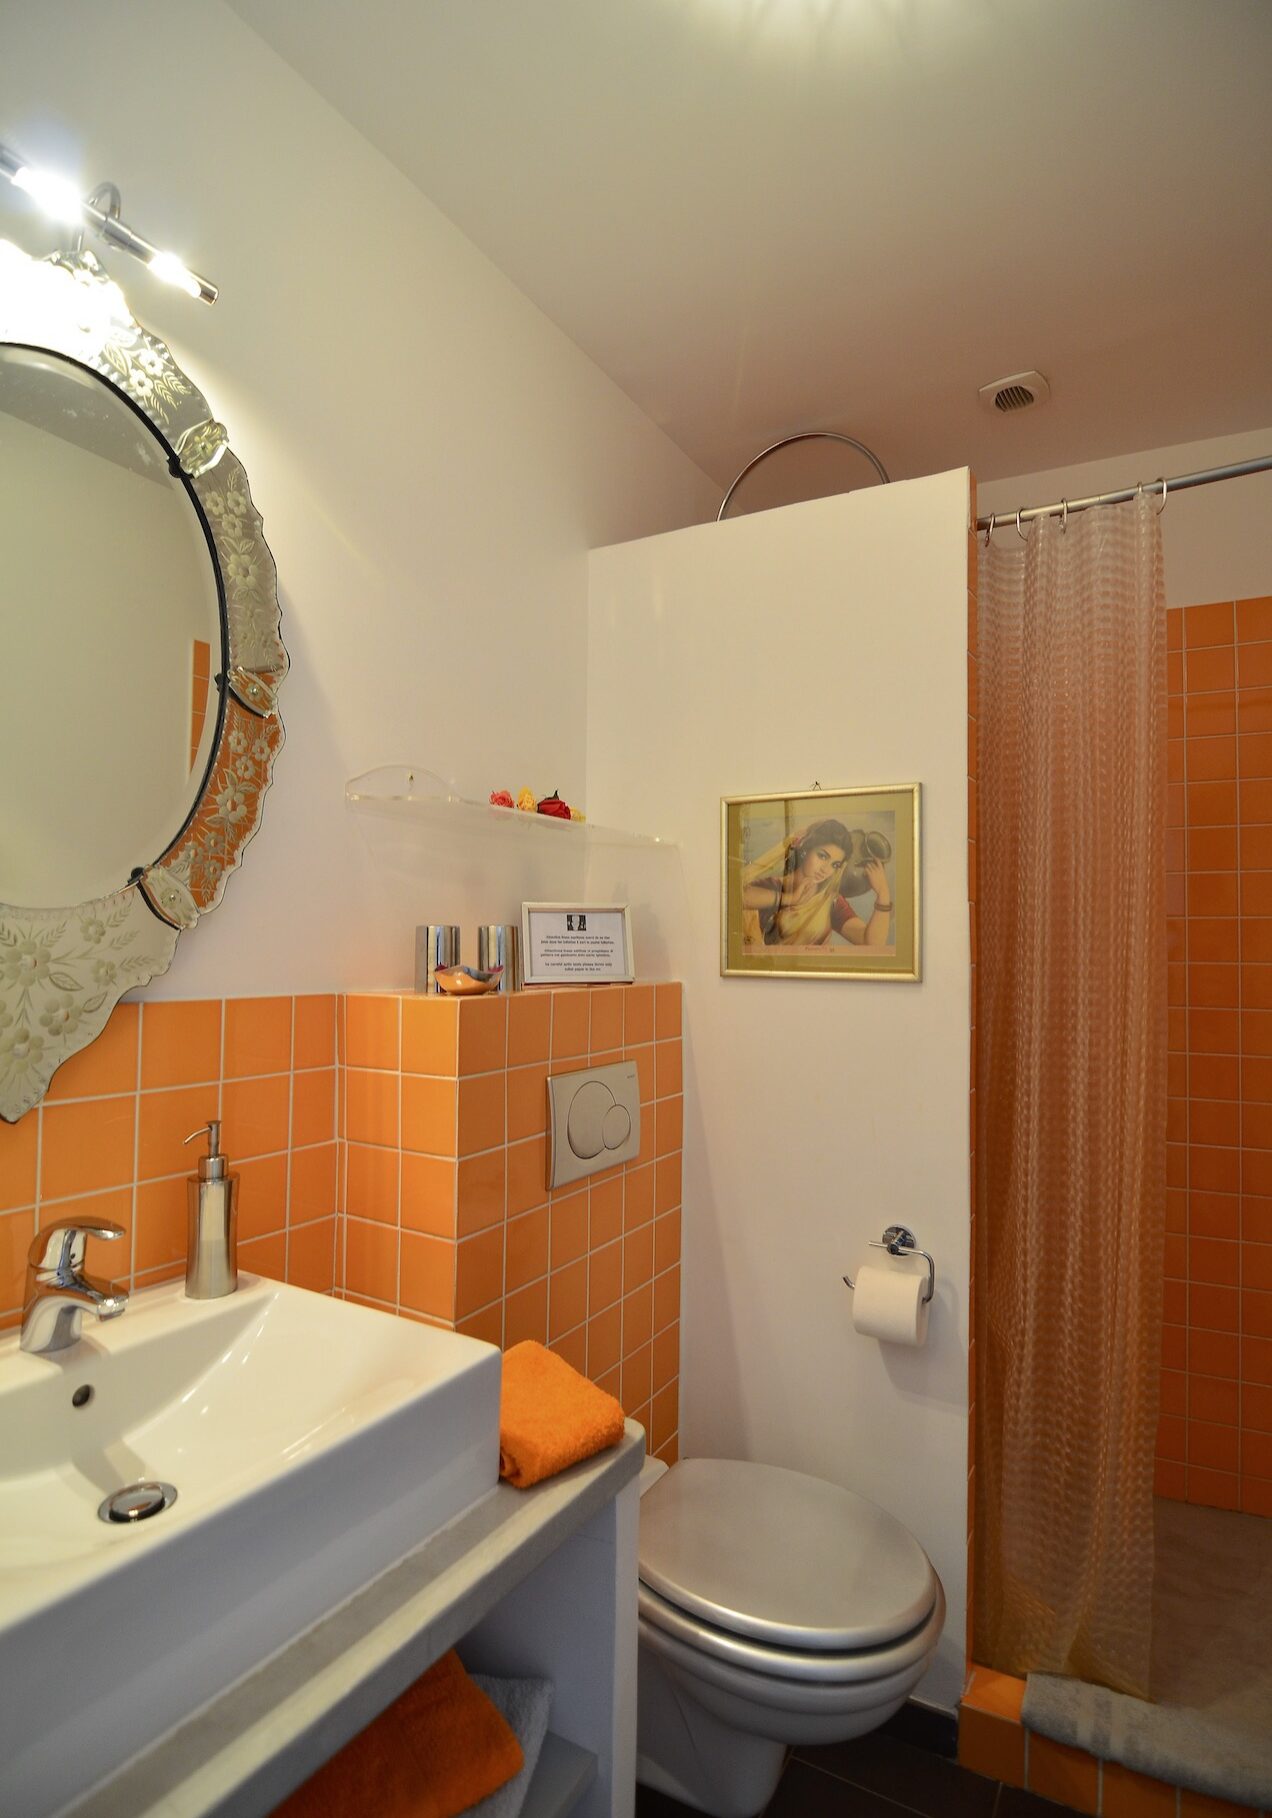 Location maison avec piscine - Villa Chandra à Biot (06) Côte d'Azur - Location chambre Morjim 3 personnes avec salle de bain privée - décoration pop, 60's